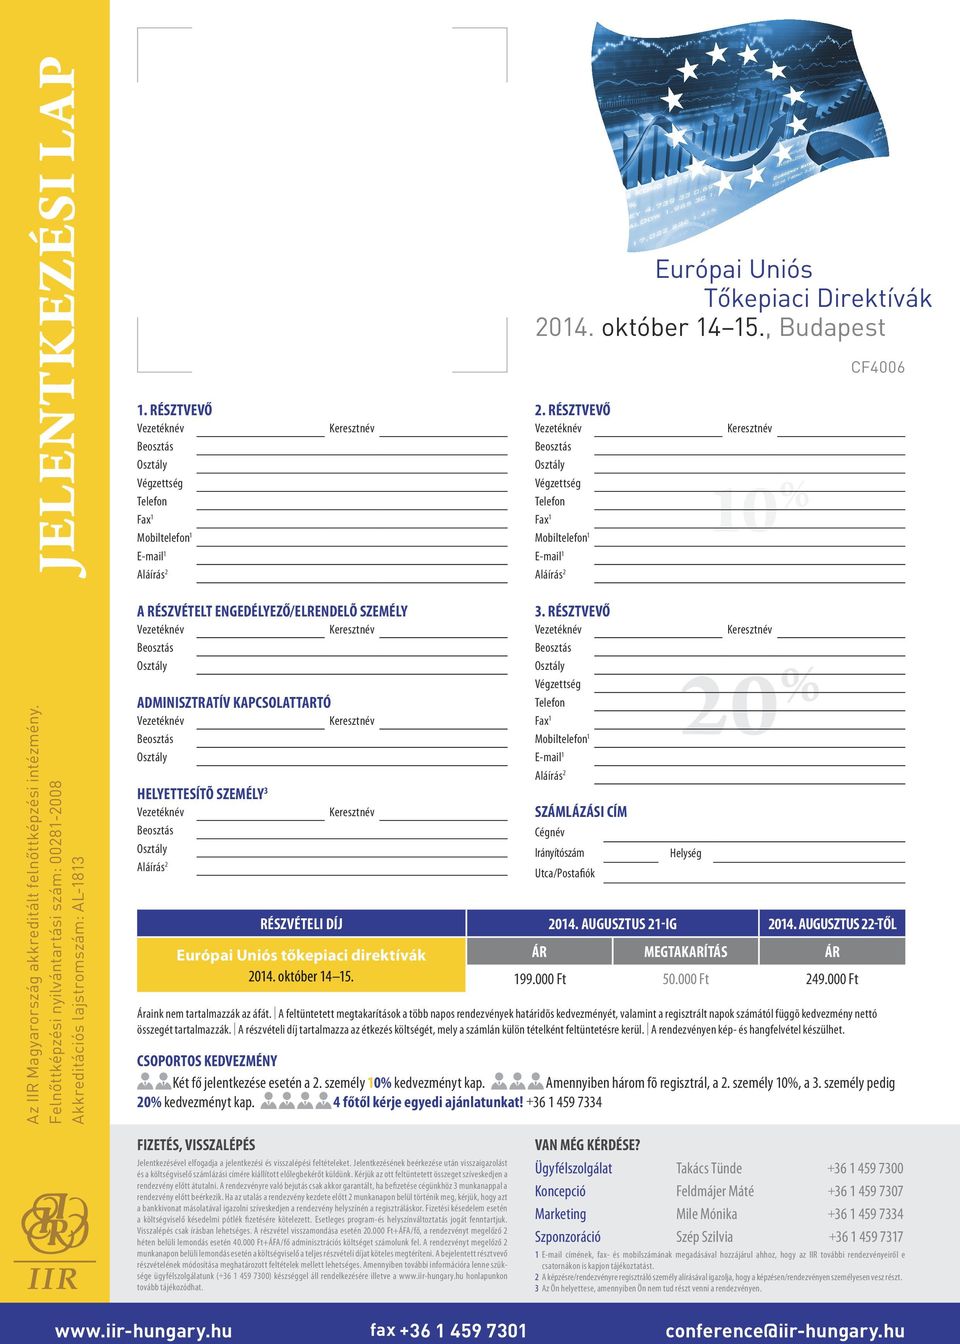 Résztvevő Számlázási cím Cégnév Irányítószám Utca/Postafiók Helység Részvételi díj 2014. augusztus 21-ig 2014. augusztus 22-től Európai Uniós tőkepiaci direktívák ár megtakarítás ár 2014.